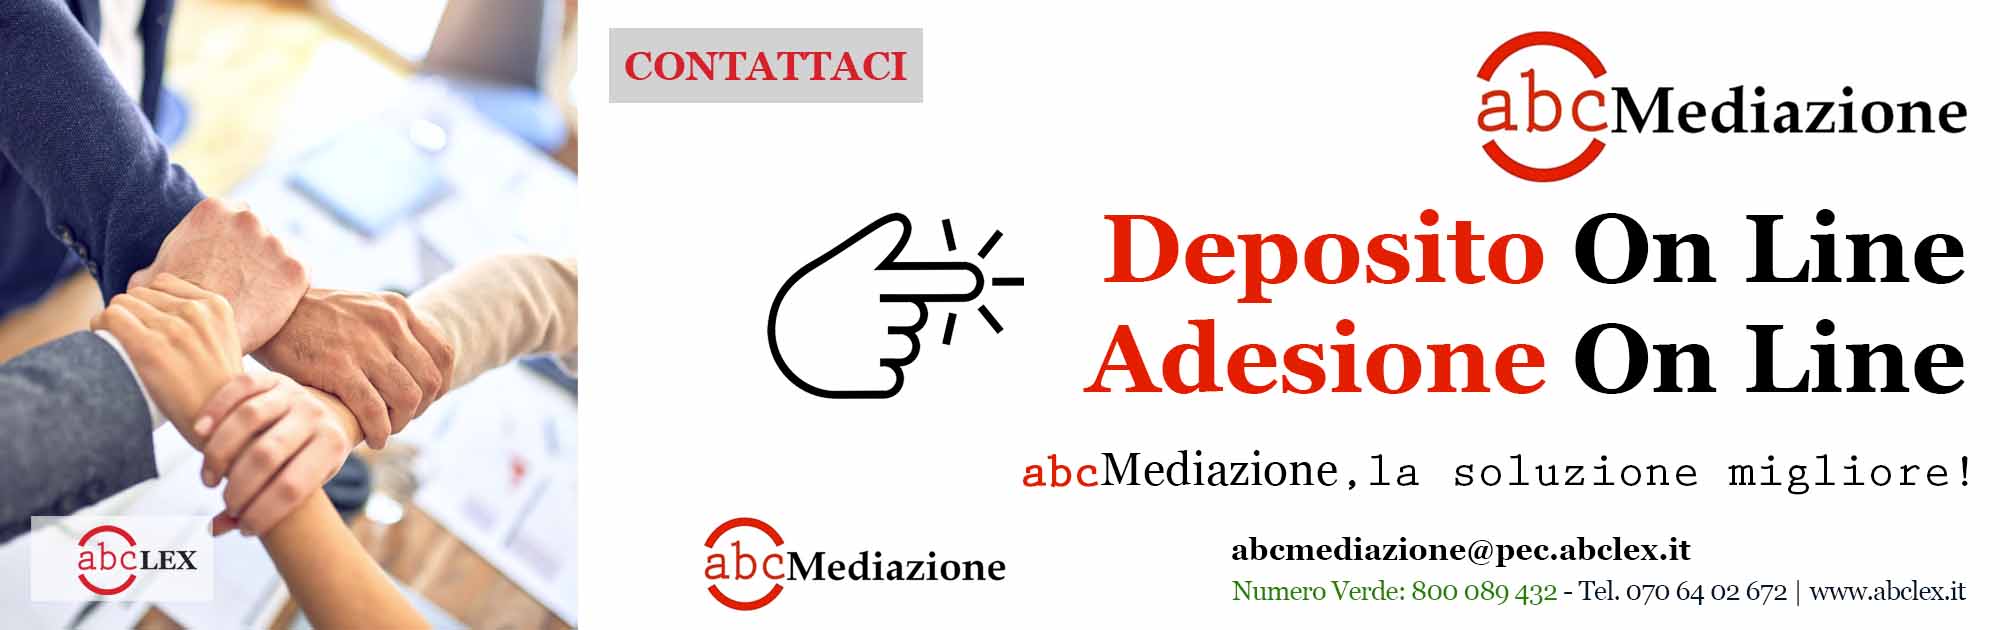 Adesione Online - abc Mediazione